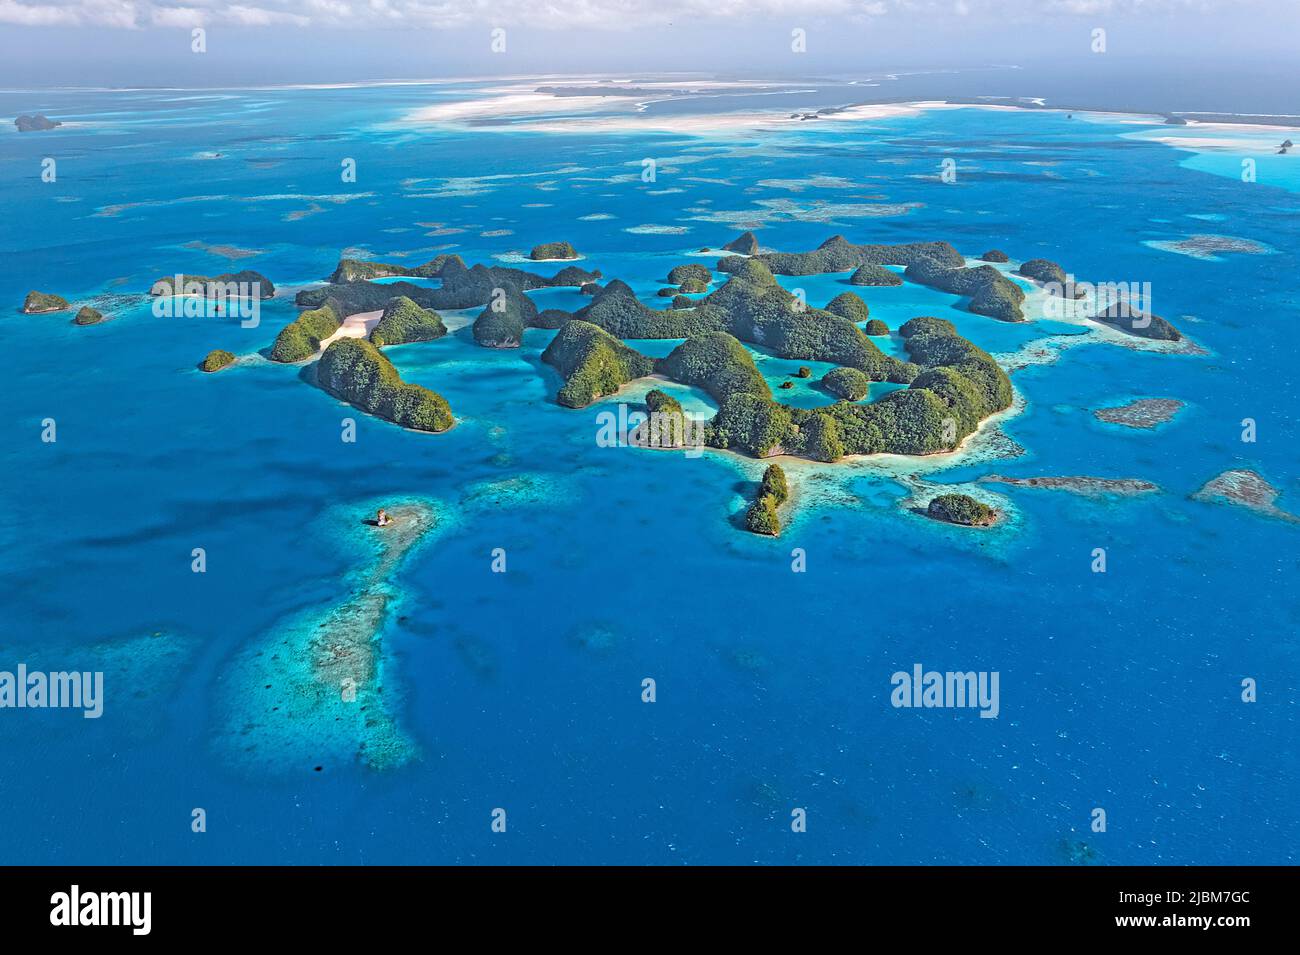 Vue aérienne, îles et récifs coralliens des Palaos, Micronésie, océan Pacifique, Asie Banque D'Images